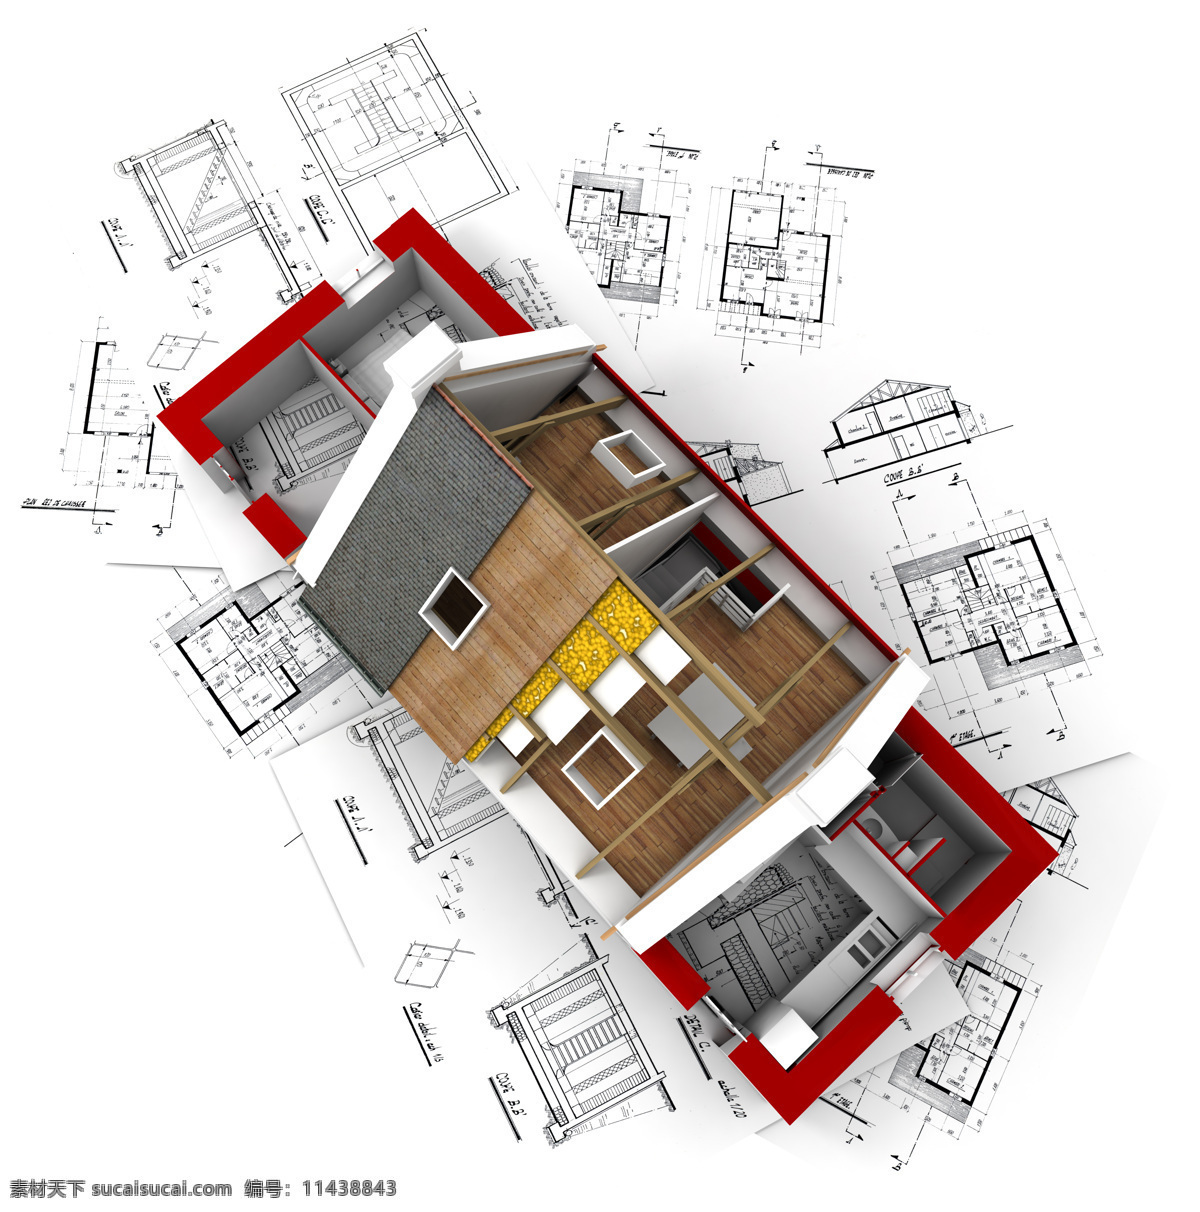 3d 建筑物 平面图 精品图片 实用图片 精美图片 印刷适用 高清图片 创意图片 建筑 建设 房子 房地产 图纸 建筑设计 环境设计